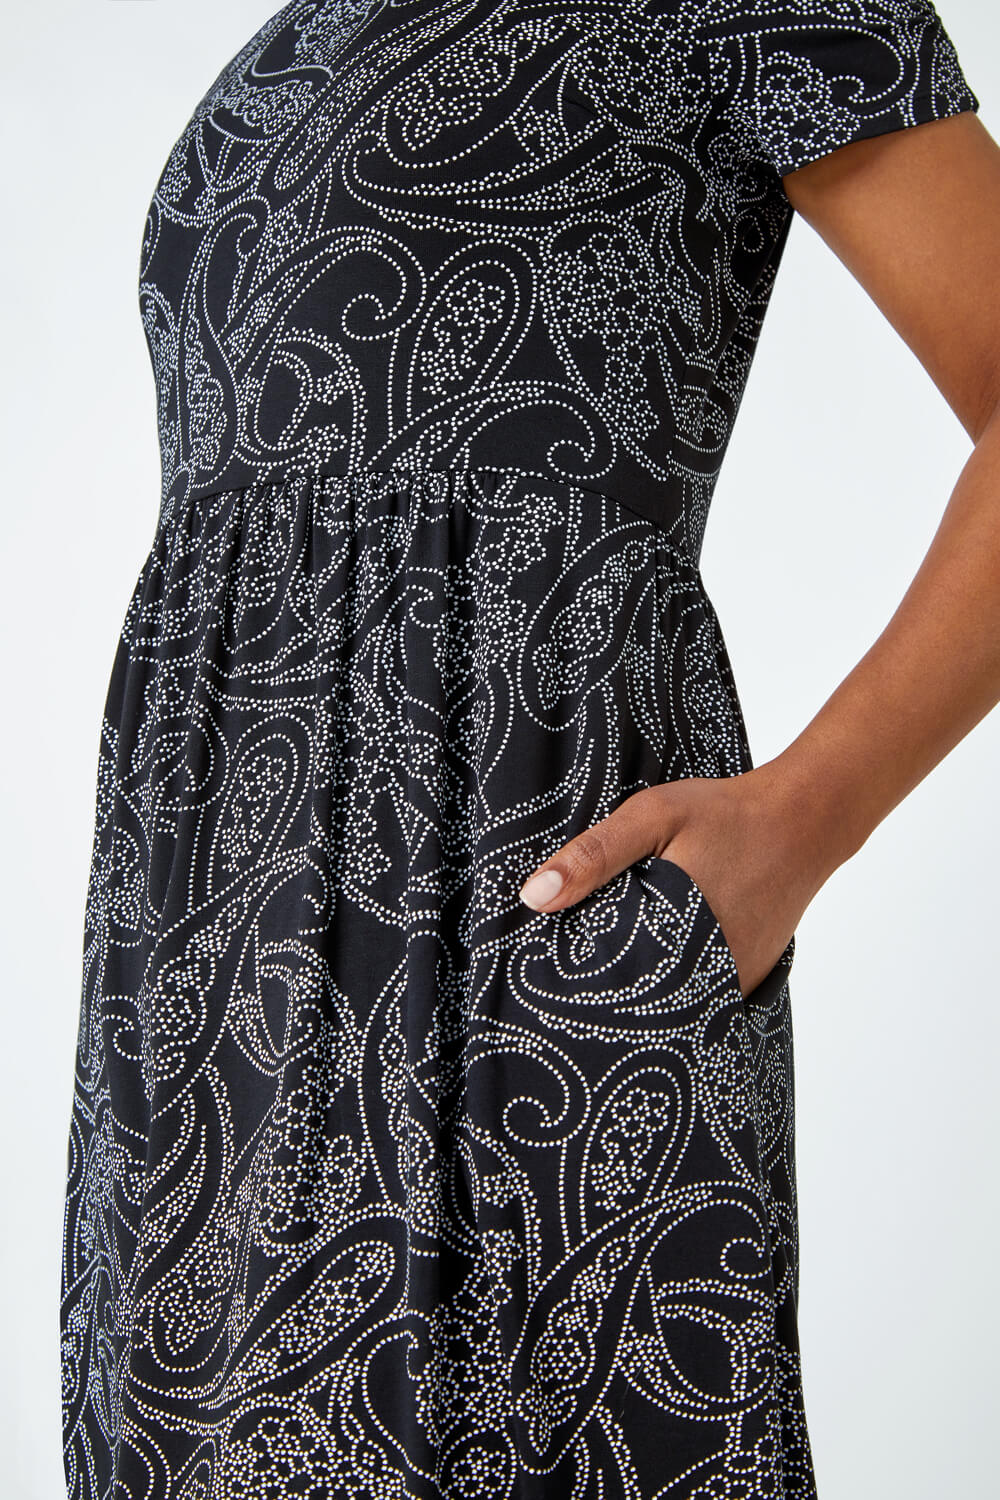 Black Petite Floral Stretch Pocket Dress, Image 5 of 5